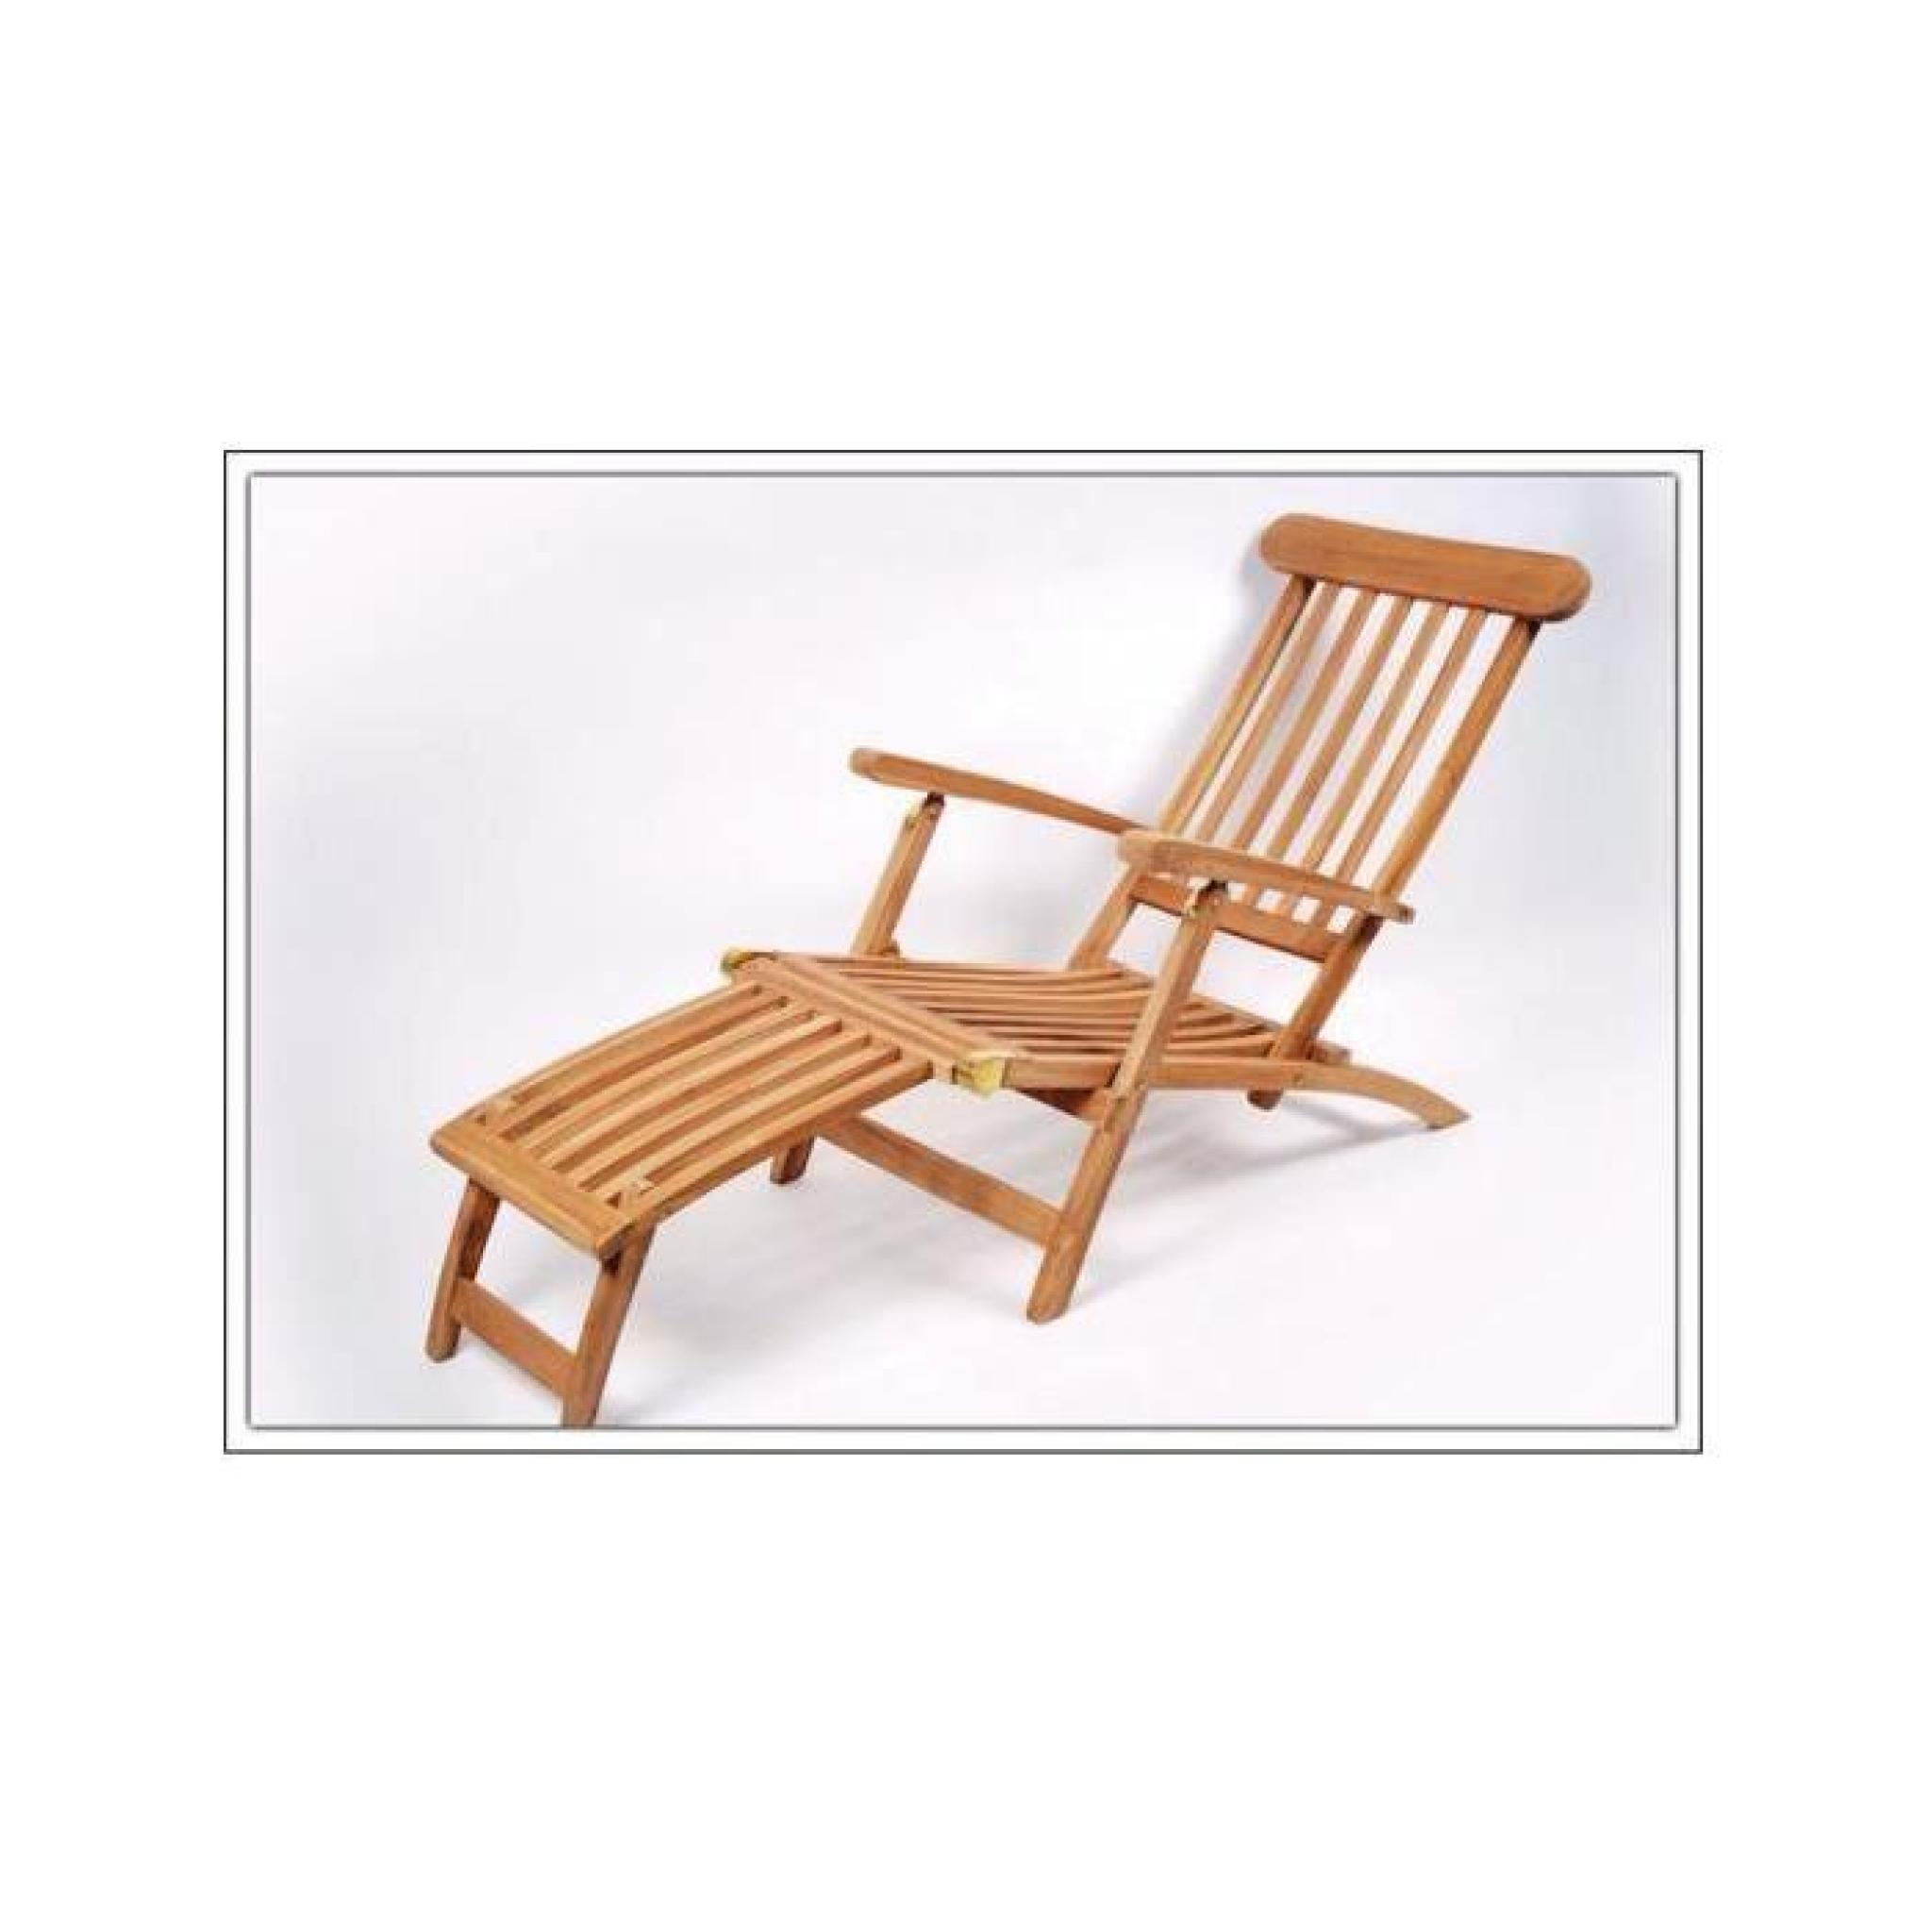 Special-trends - Teck Deck Chair pliables 190 cm x 90 cm x 58 cm pas cher